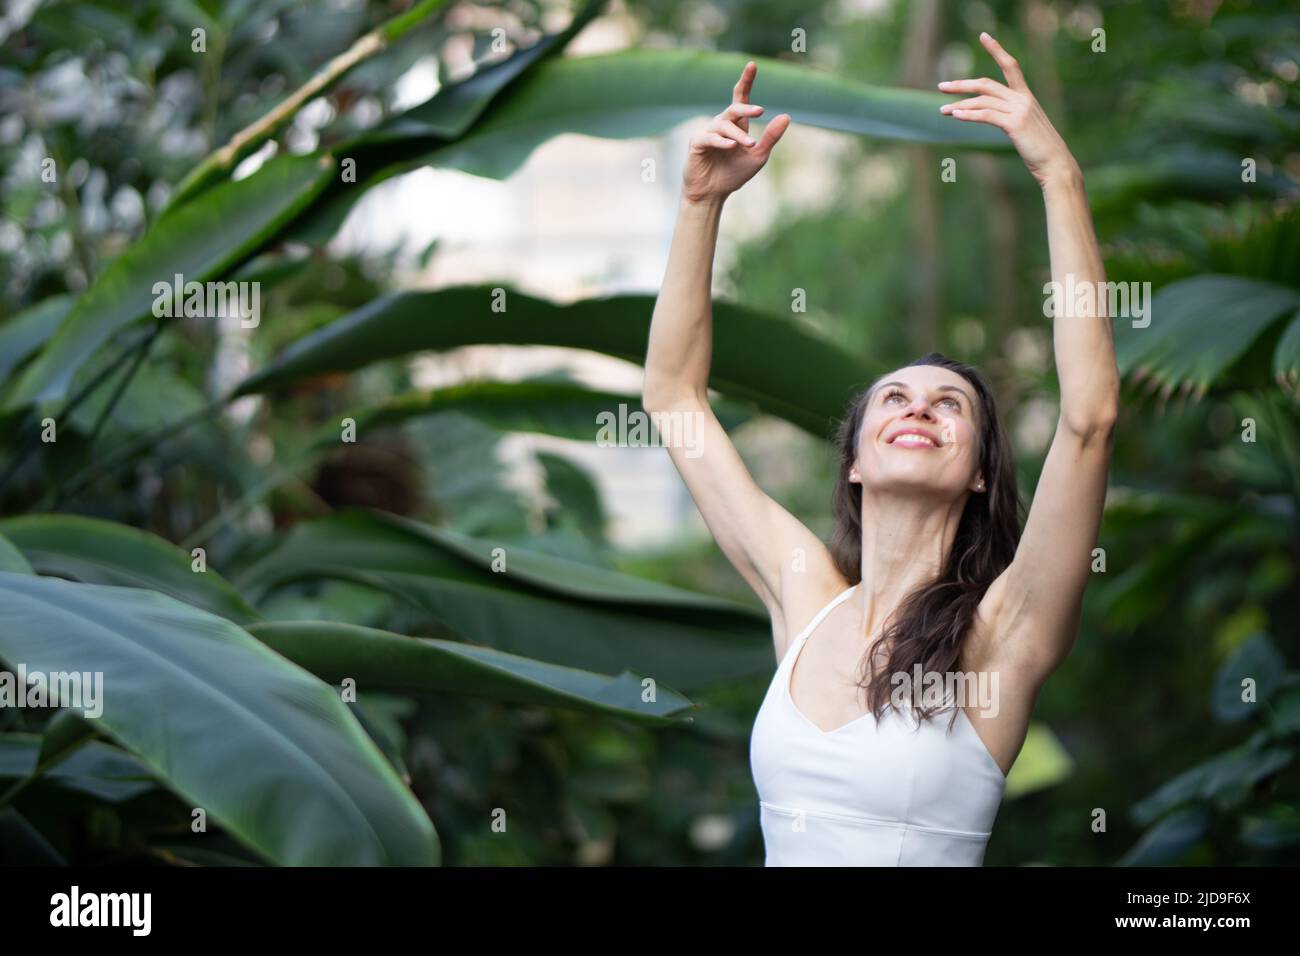 Mujeres meditando y practicando yoga en la selva tropical. Hermosa joven practicando yoga al aire libre con bosque tropical en el fondo. Foto de stock